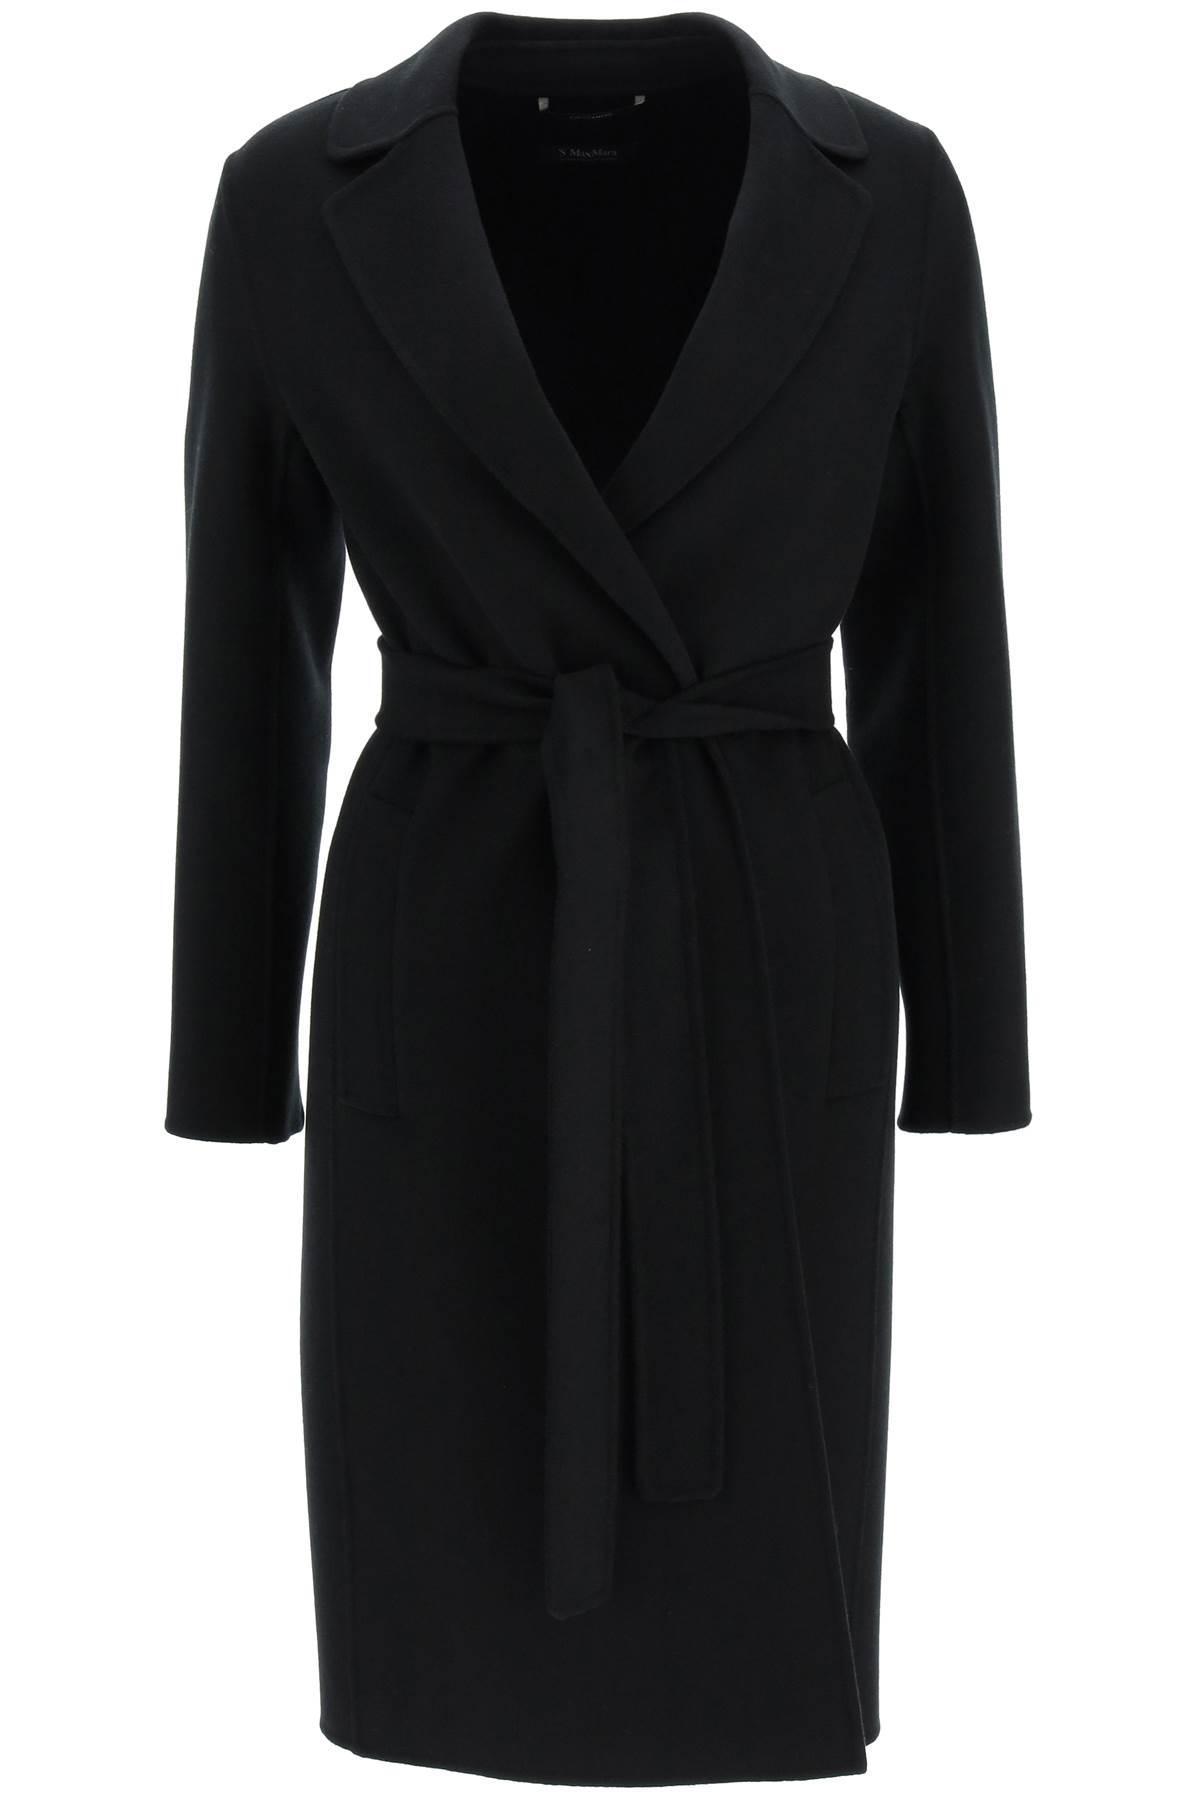 Max Mara Pauline New Wool Coat in Black | Lyst